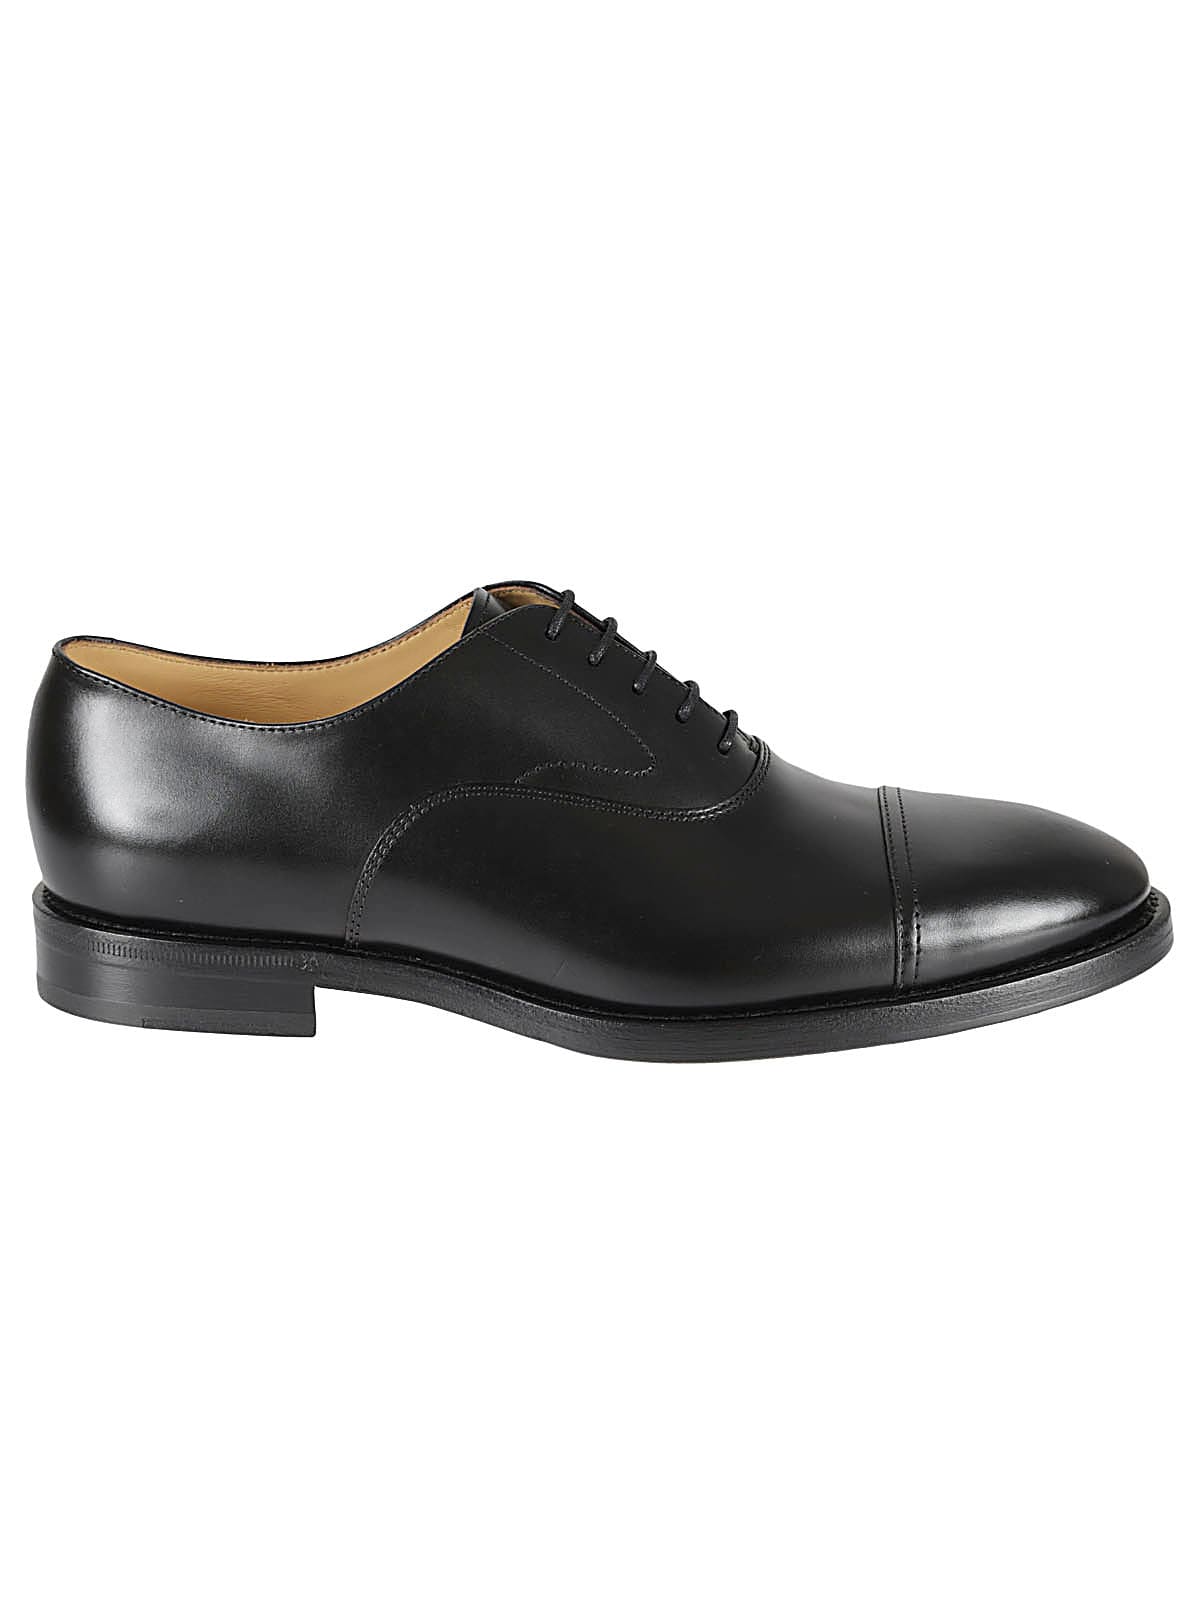 Brunello Cucinelli Classic Oxford Shoes